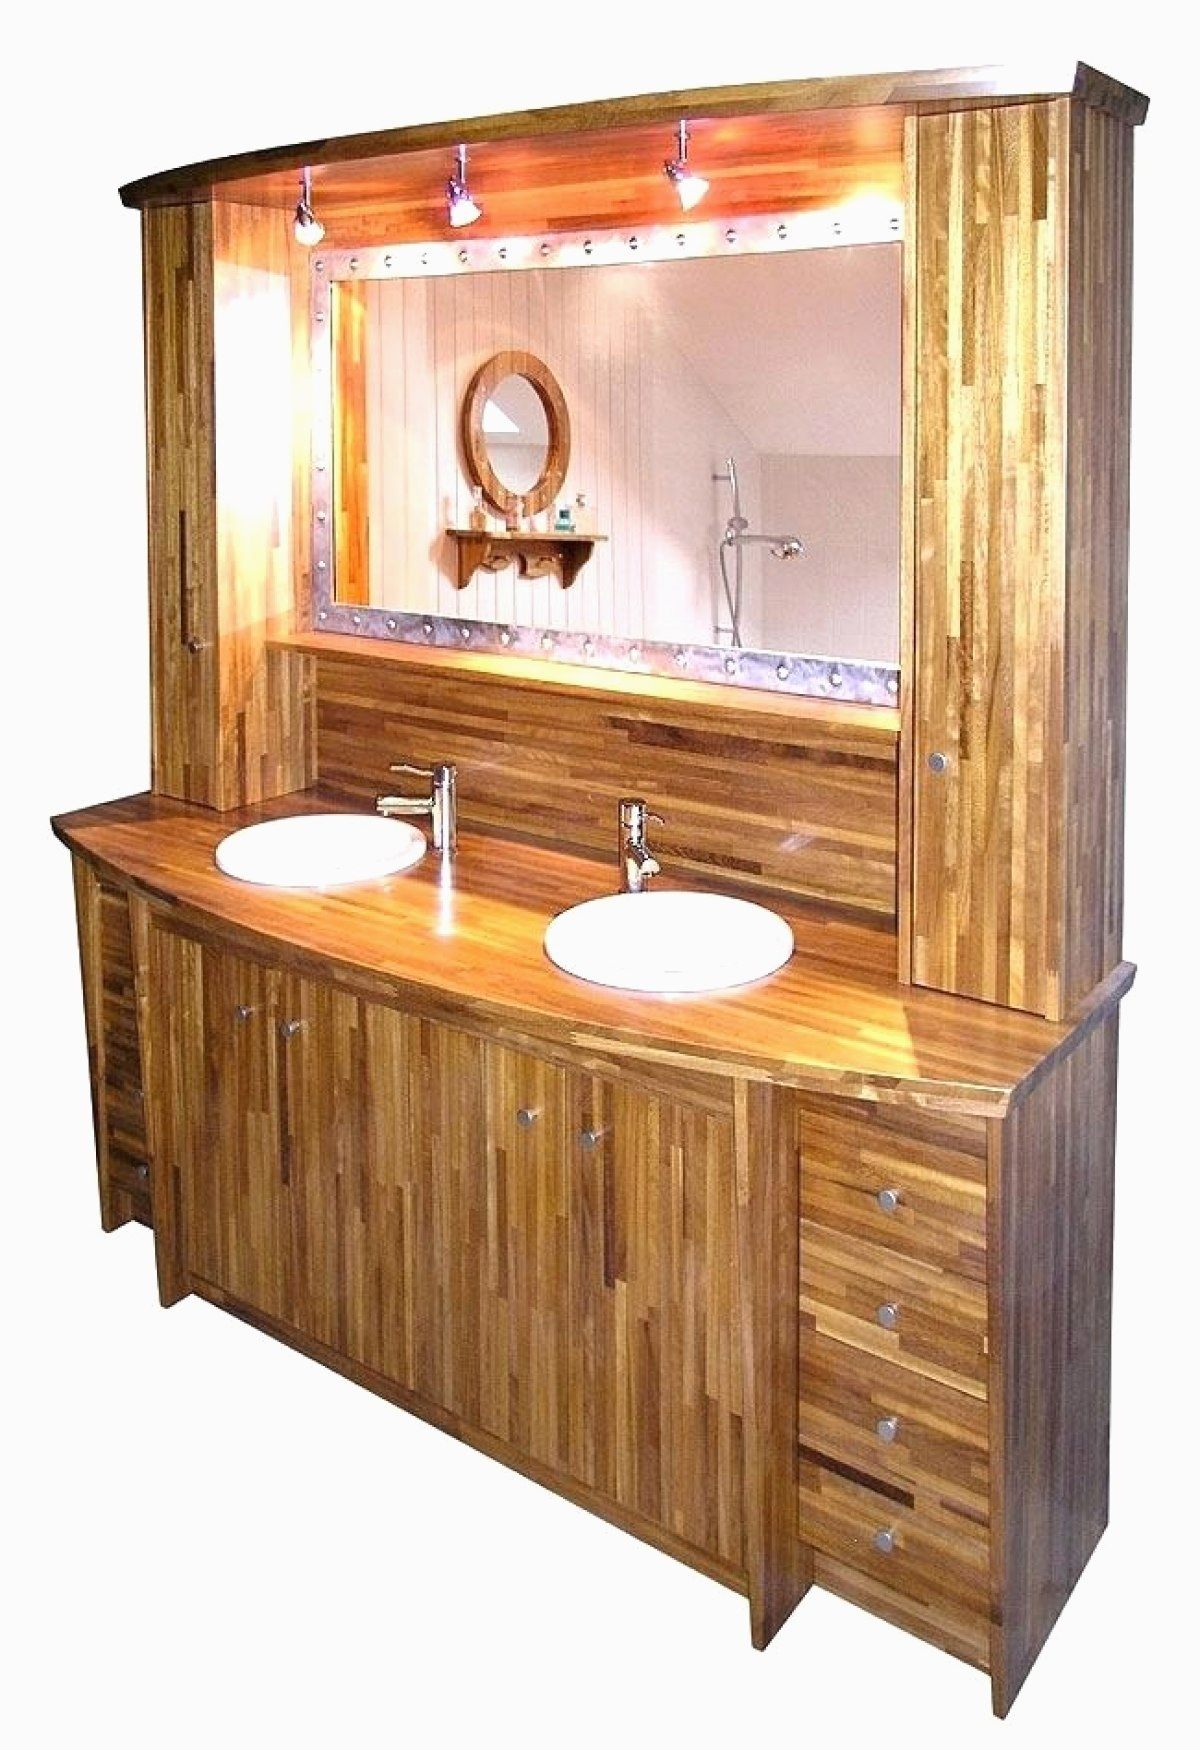 meuble salle de bain palette de luxe meuble salle de bain en palette types 14 rare meuble salle de bain de meuble salle de bain palette